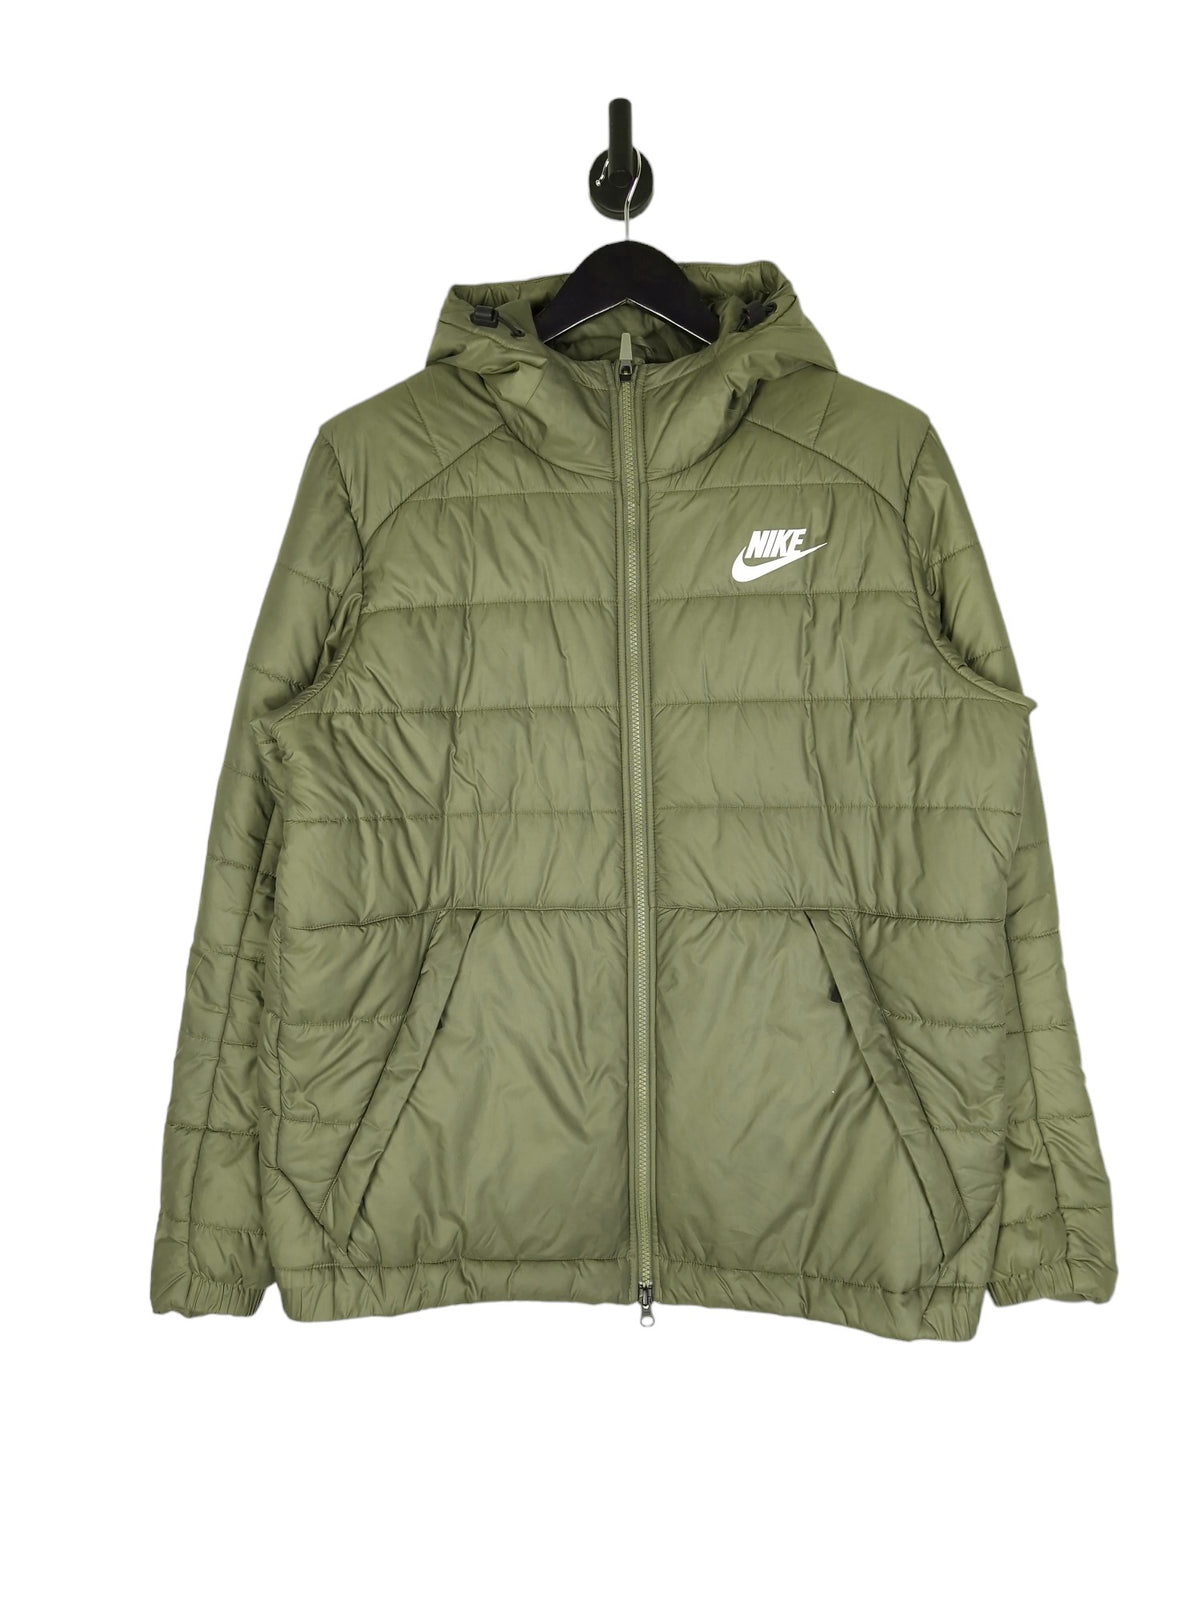 Nike Puffer Jacket - Size Large